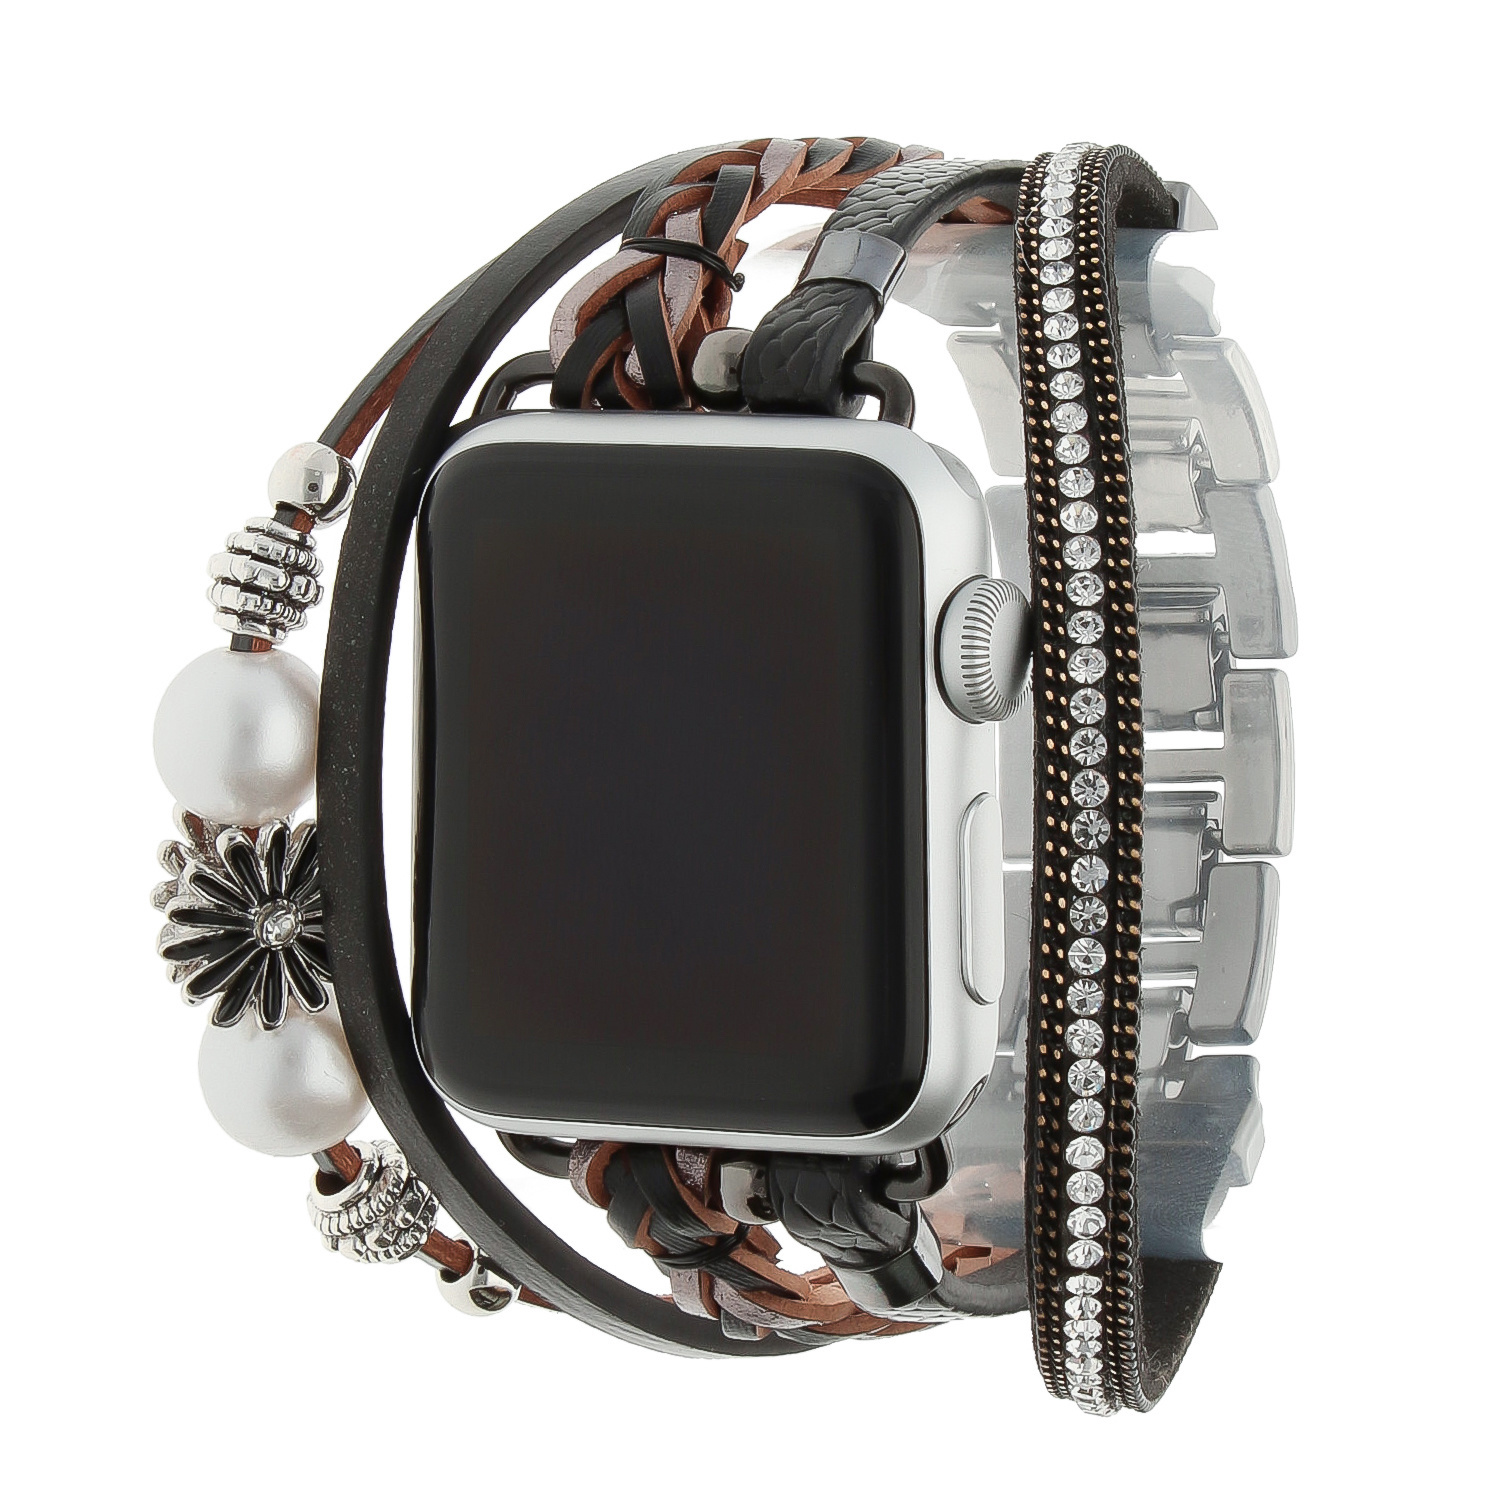 Correa de joyería para Apple Watch – Liz negra